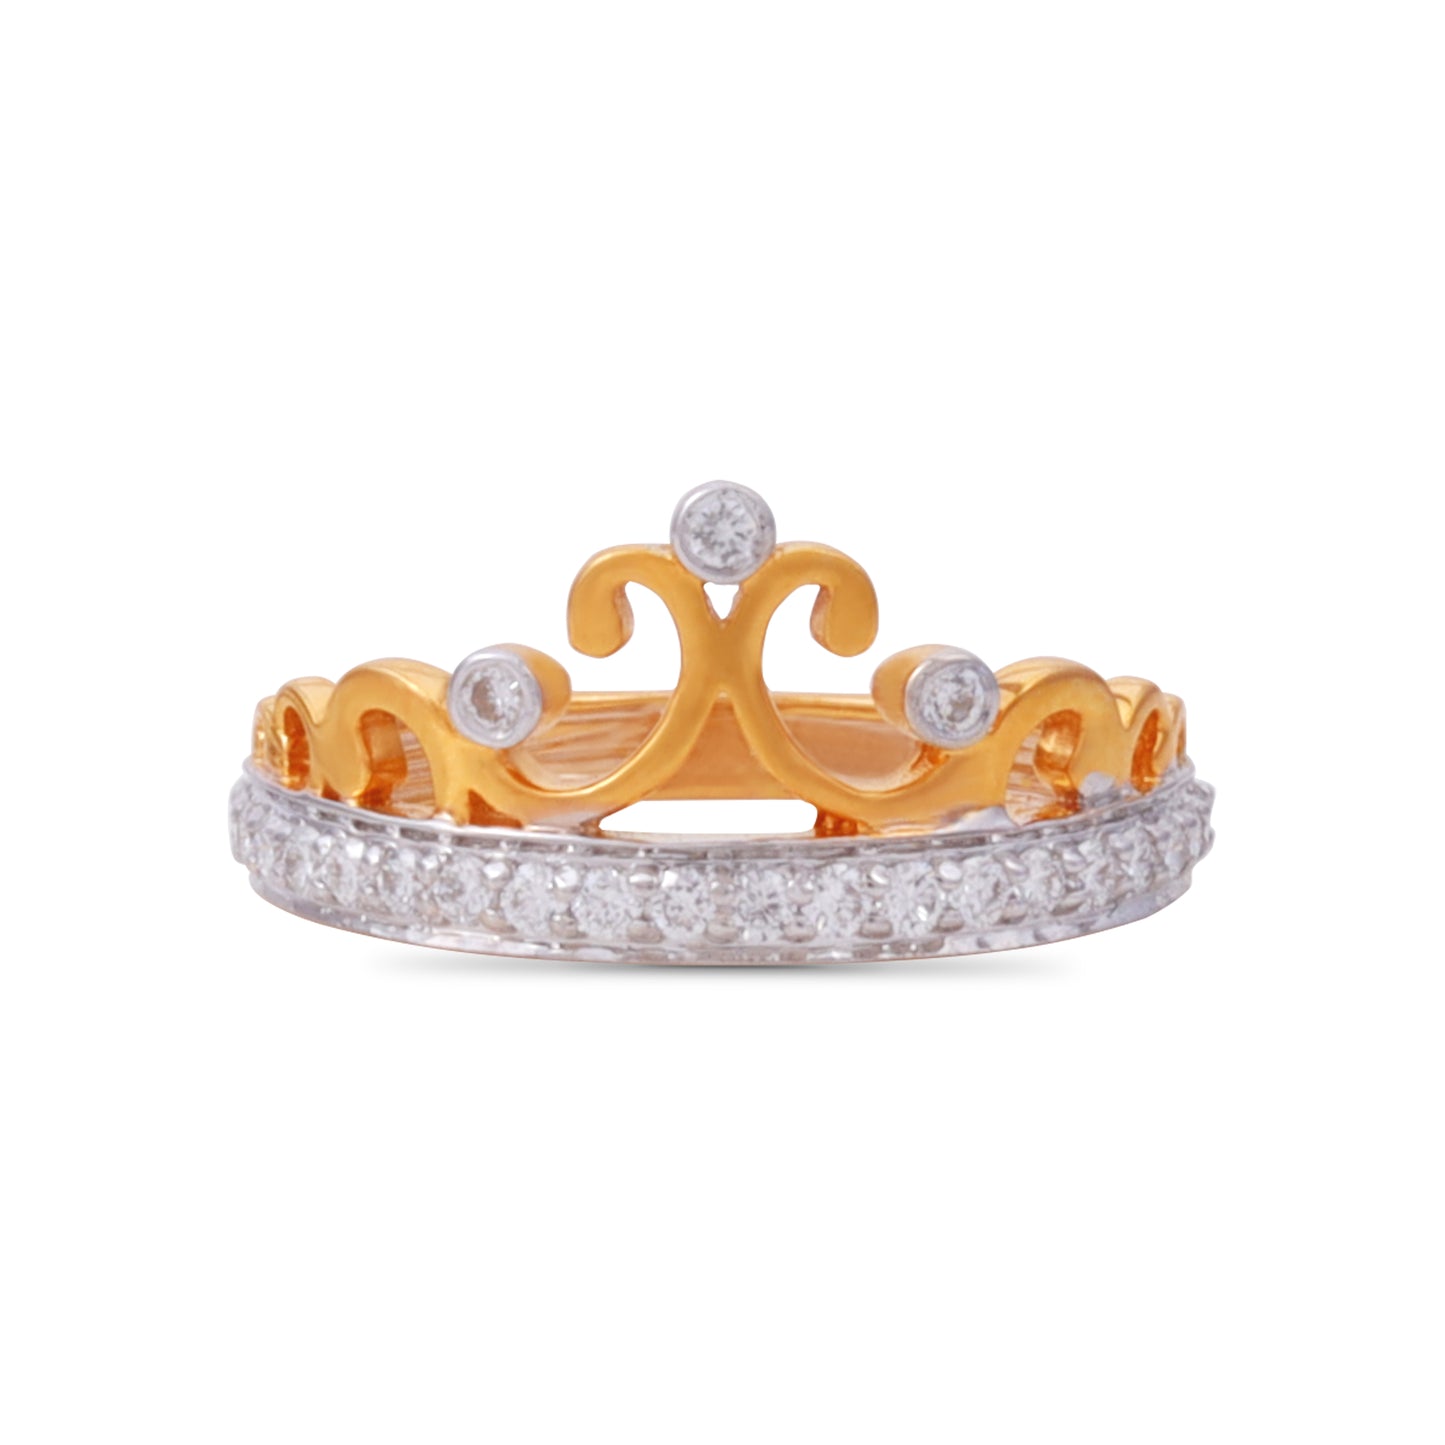 Monika Elegant Diamond Ring